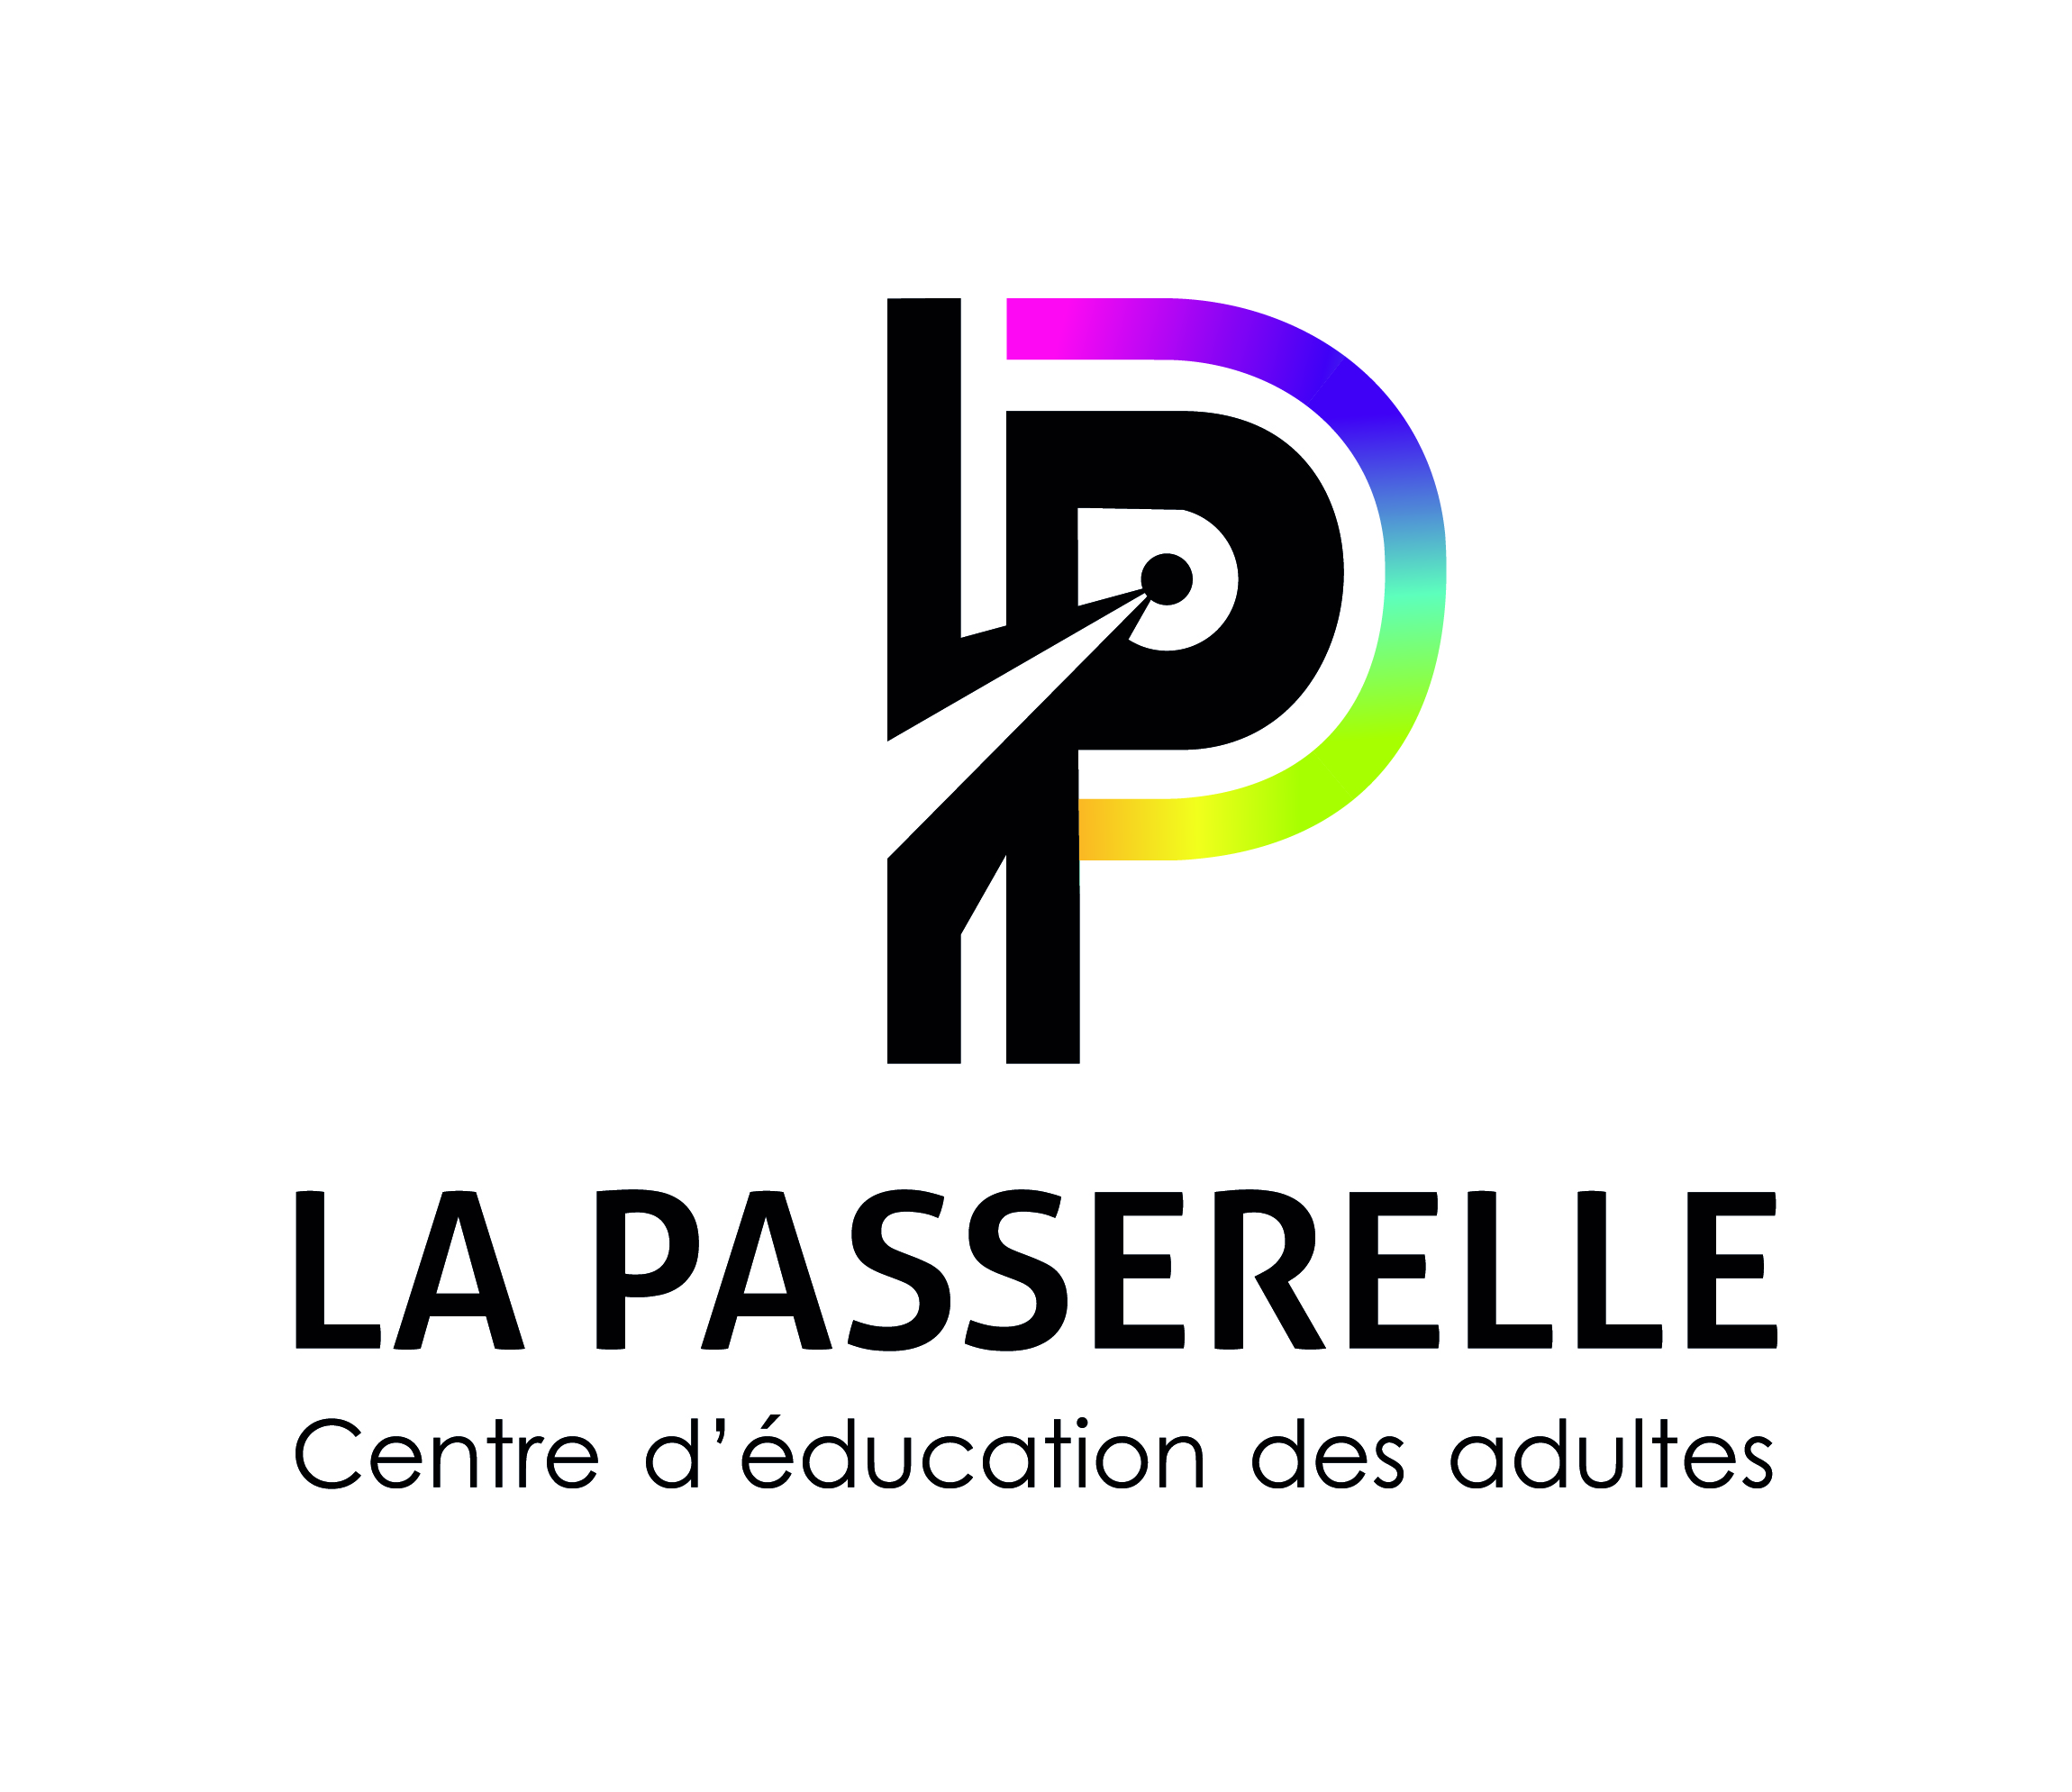 Centre d'éducation des adultes La Passerelle